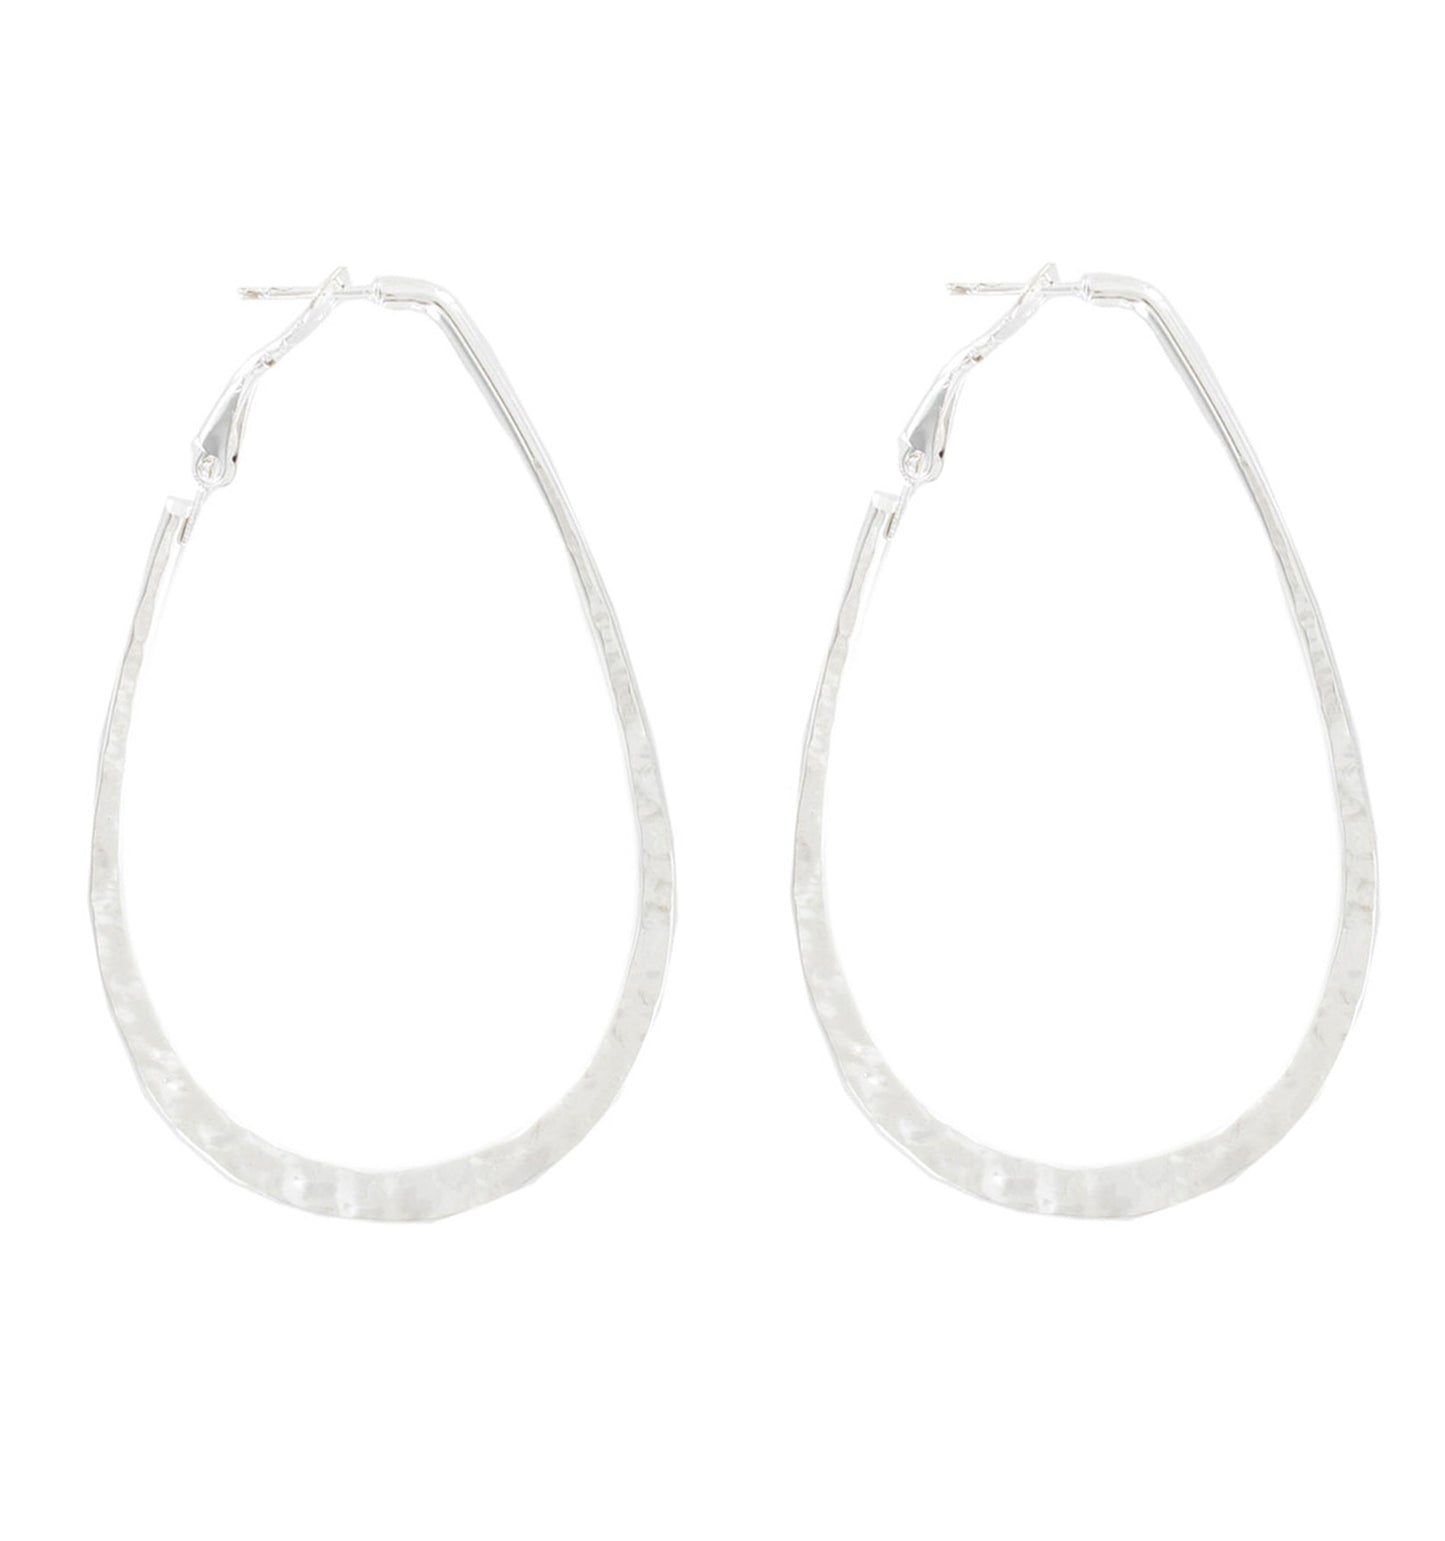 Ky & Co Pierced Earrings Hoop Loop Hammered USA 2 3/4" - Silver Tone